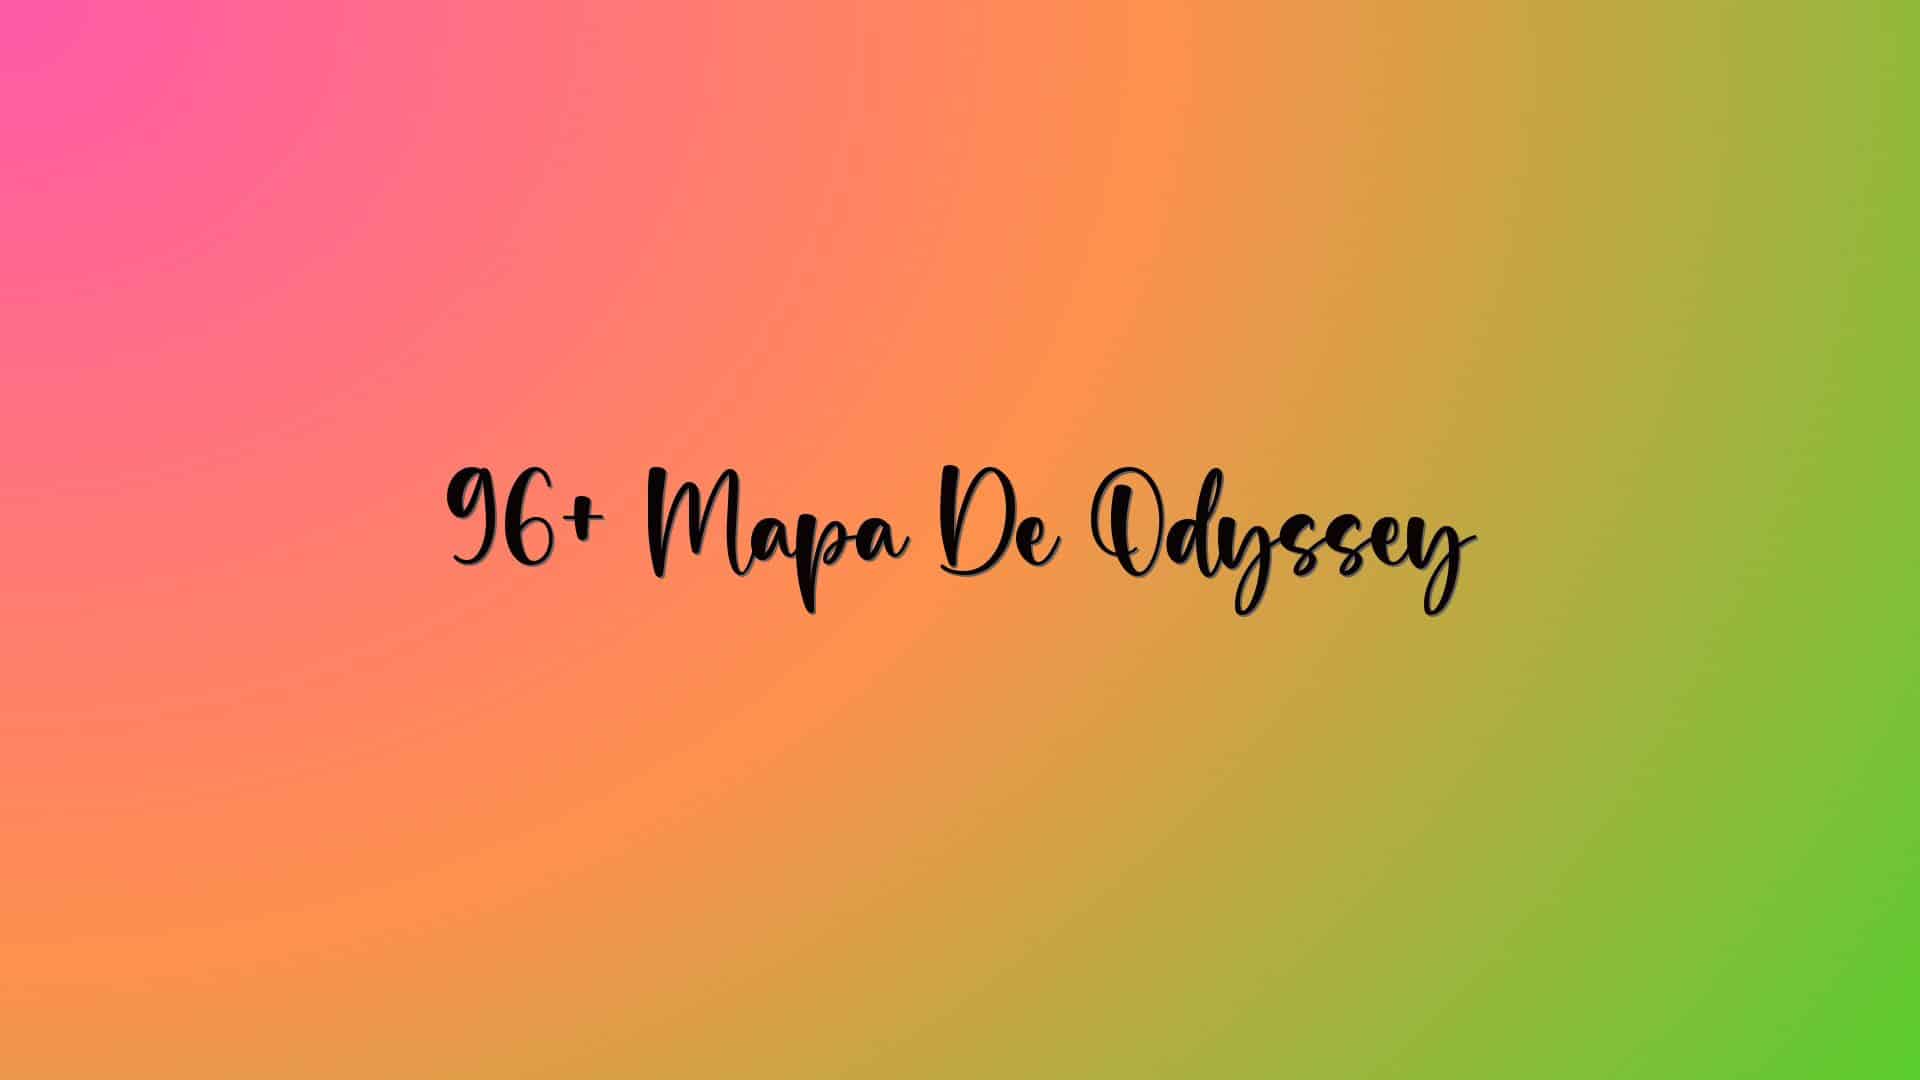 96+ Mapa De Odyssey